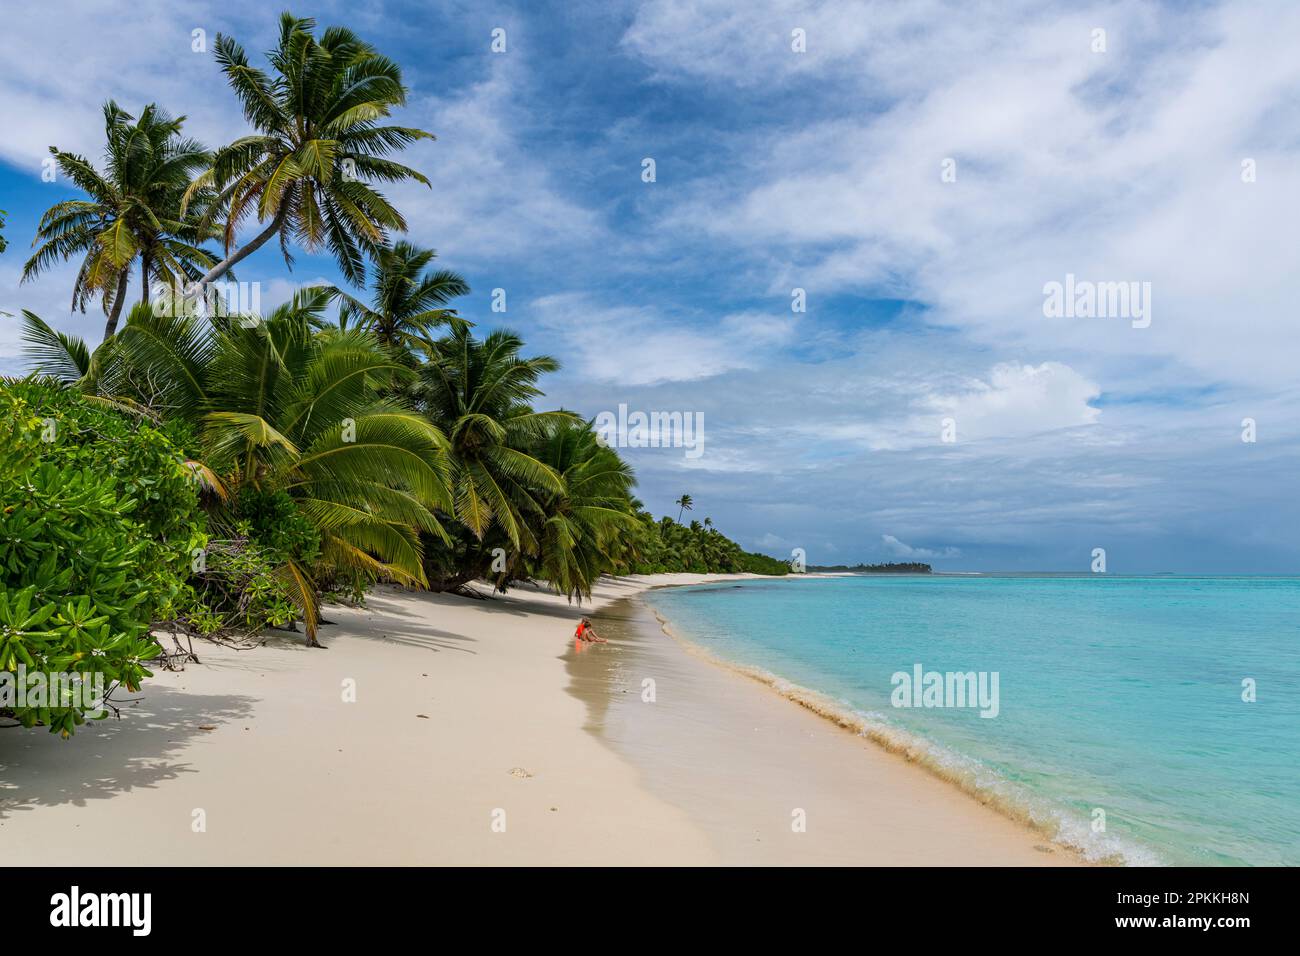 Plage de sable blanc, Direction Island, îles Cocos (Keeling), territoire australien de l'océan Indien, Australie, Océan Indien Banque D'Images